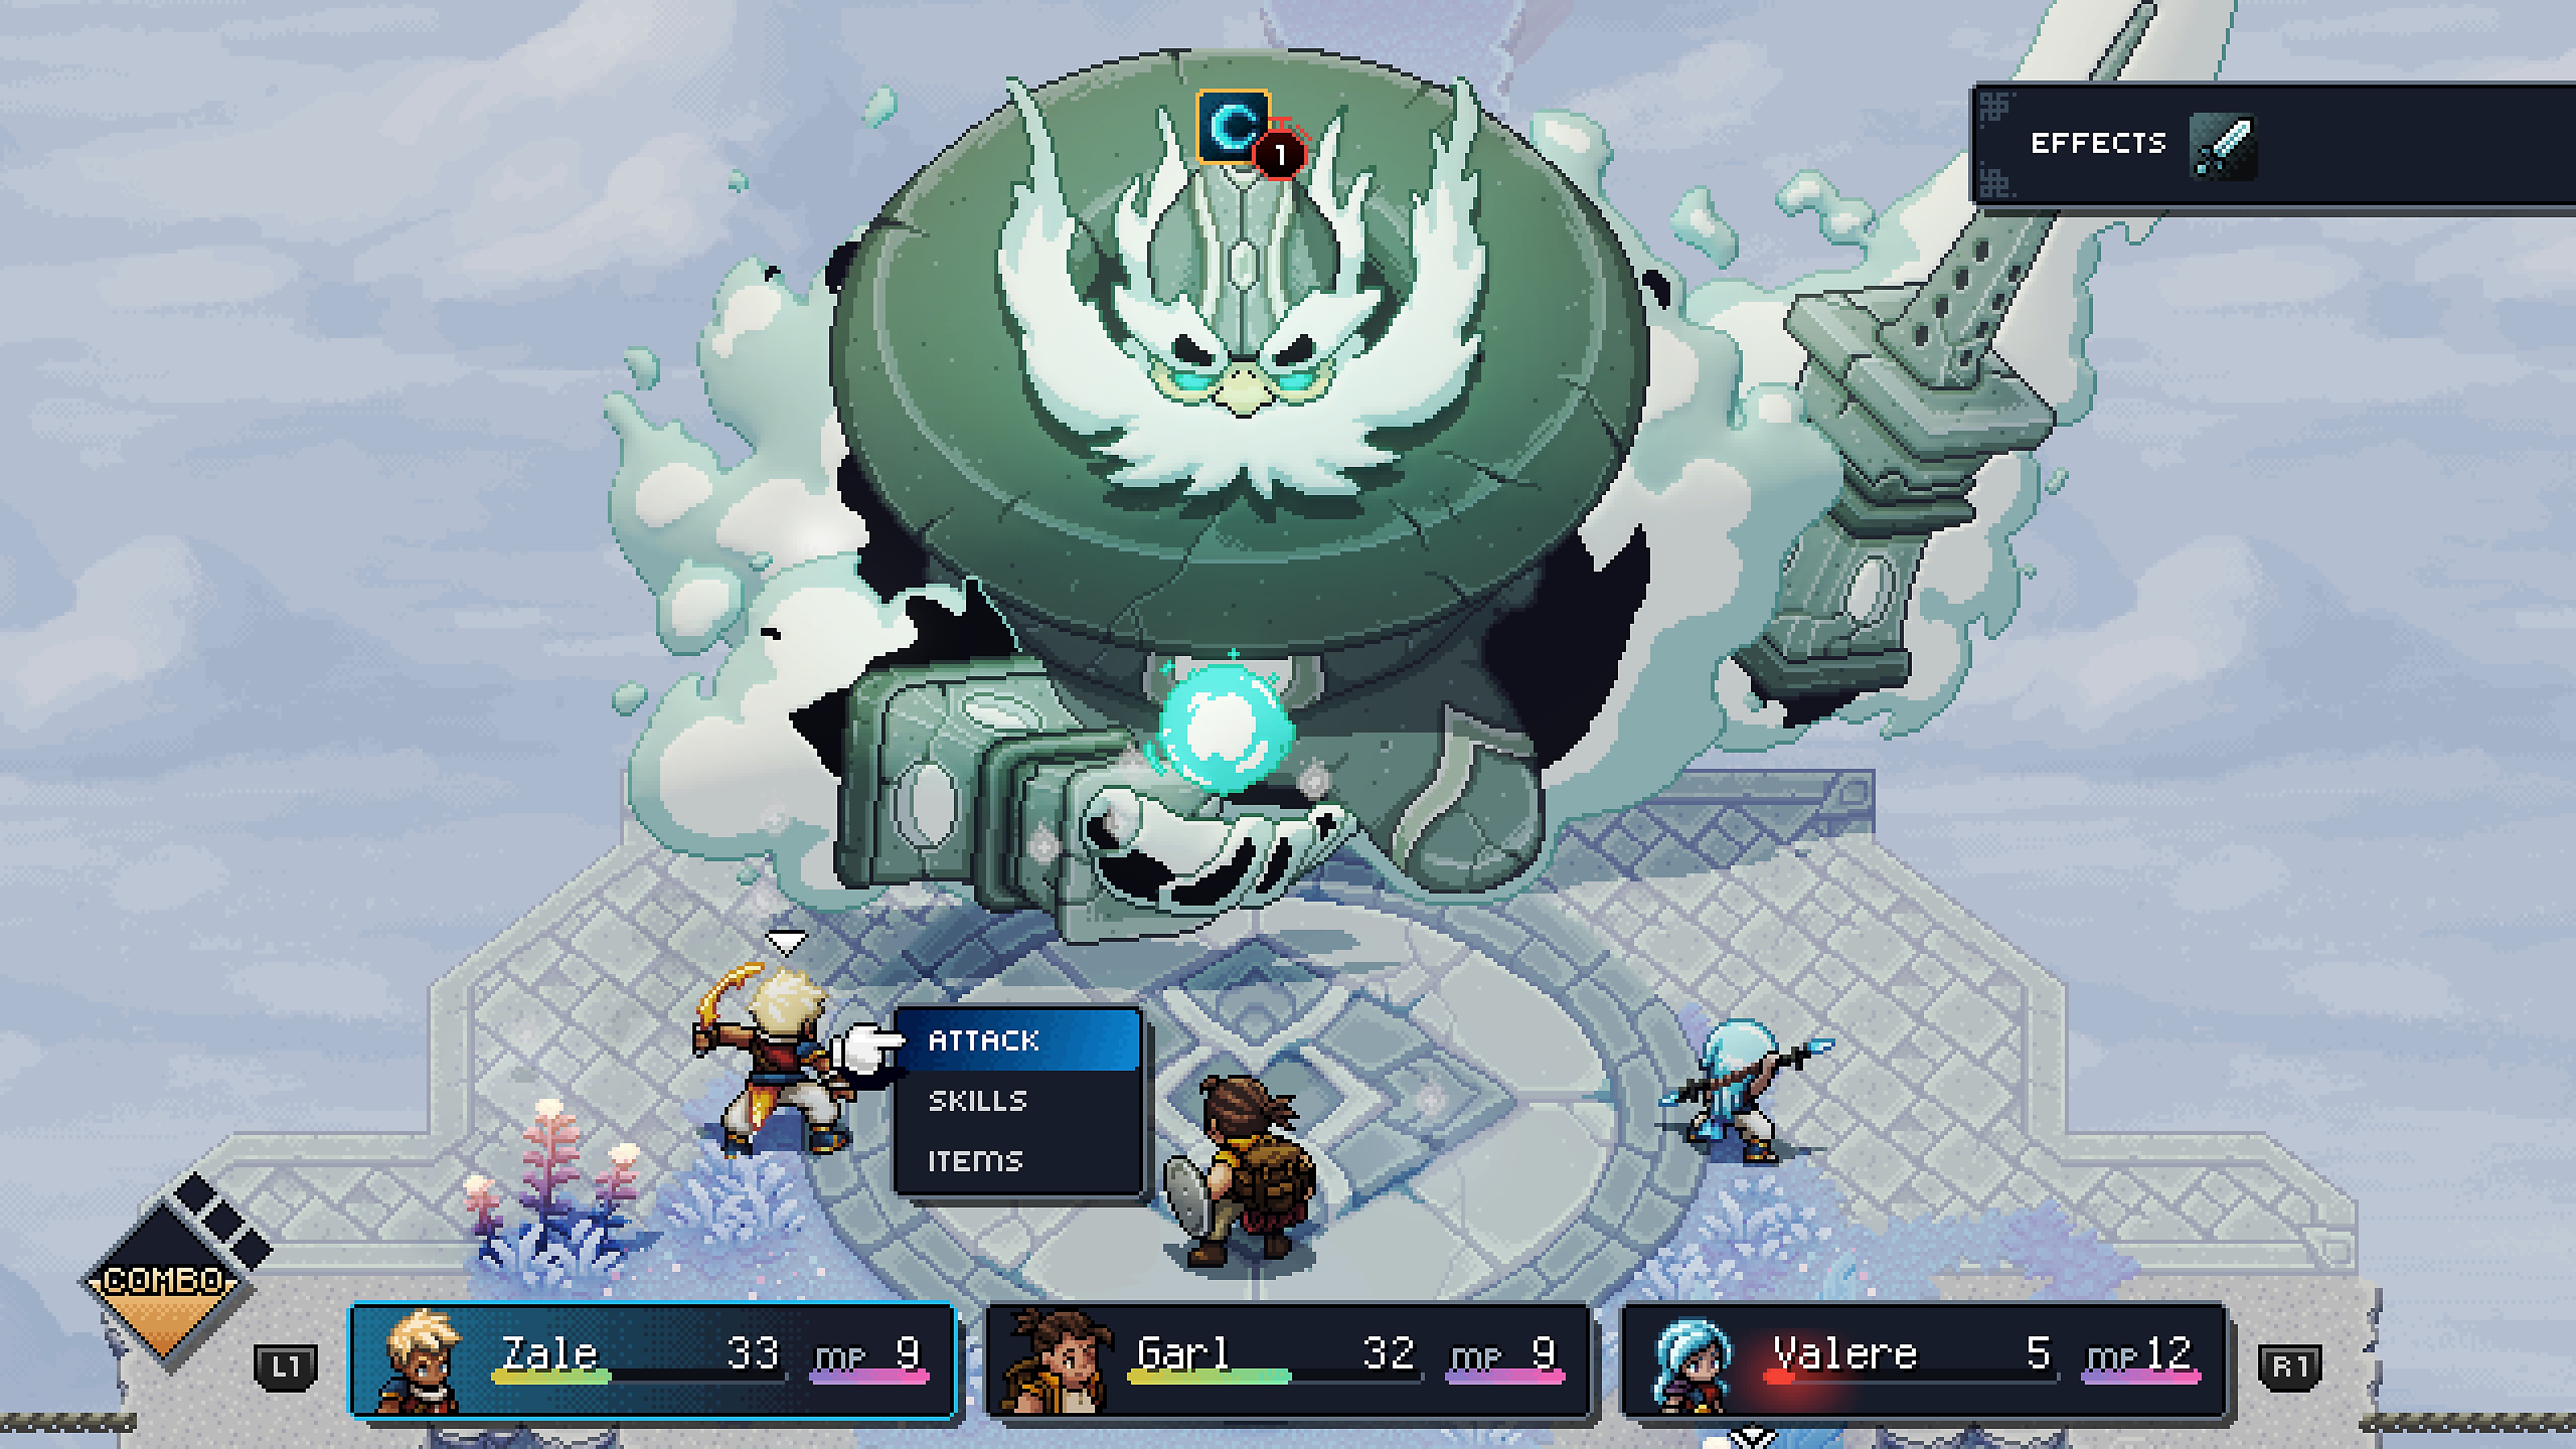 لقطة شاشة من لعبة Sea of Stars تعرض شخصيات تتشابك في قتال قائم على تبادل الأدوار.